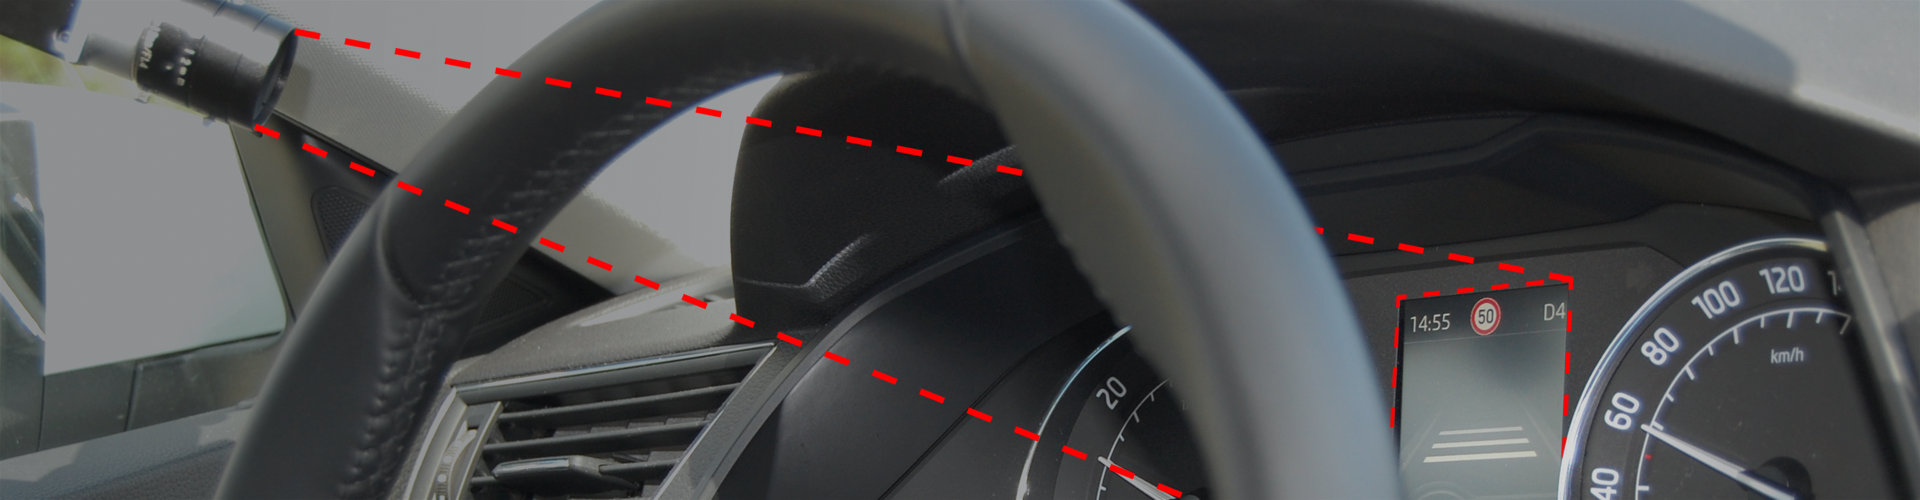 AVAD 3 | DTC | München | Detektor für audio-visuelle Signale aus dem Fahrzeug